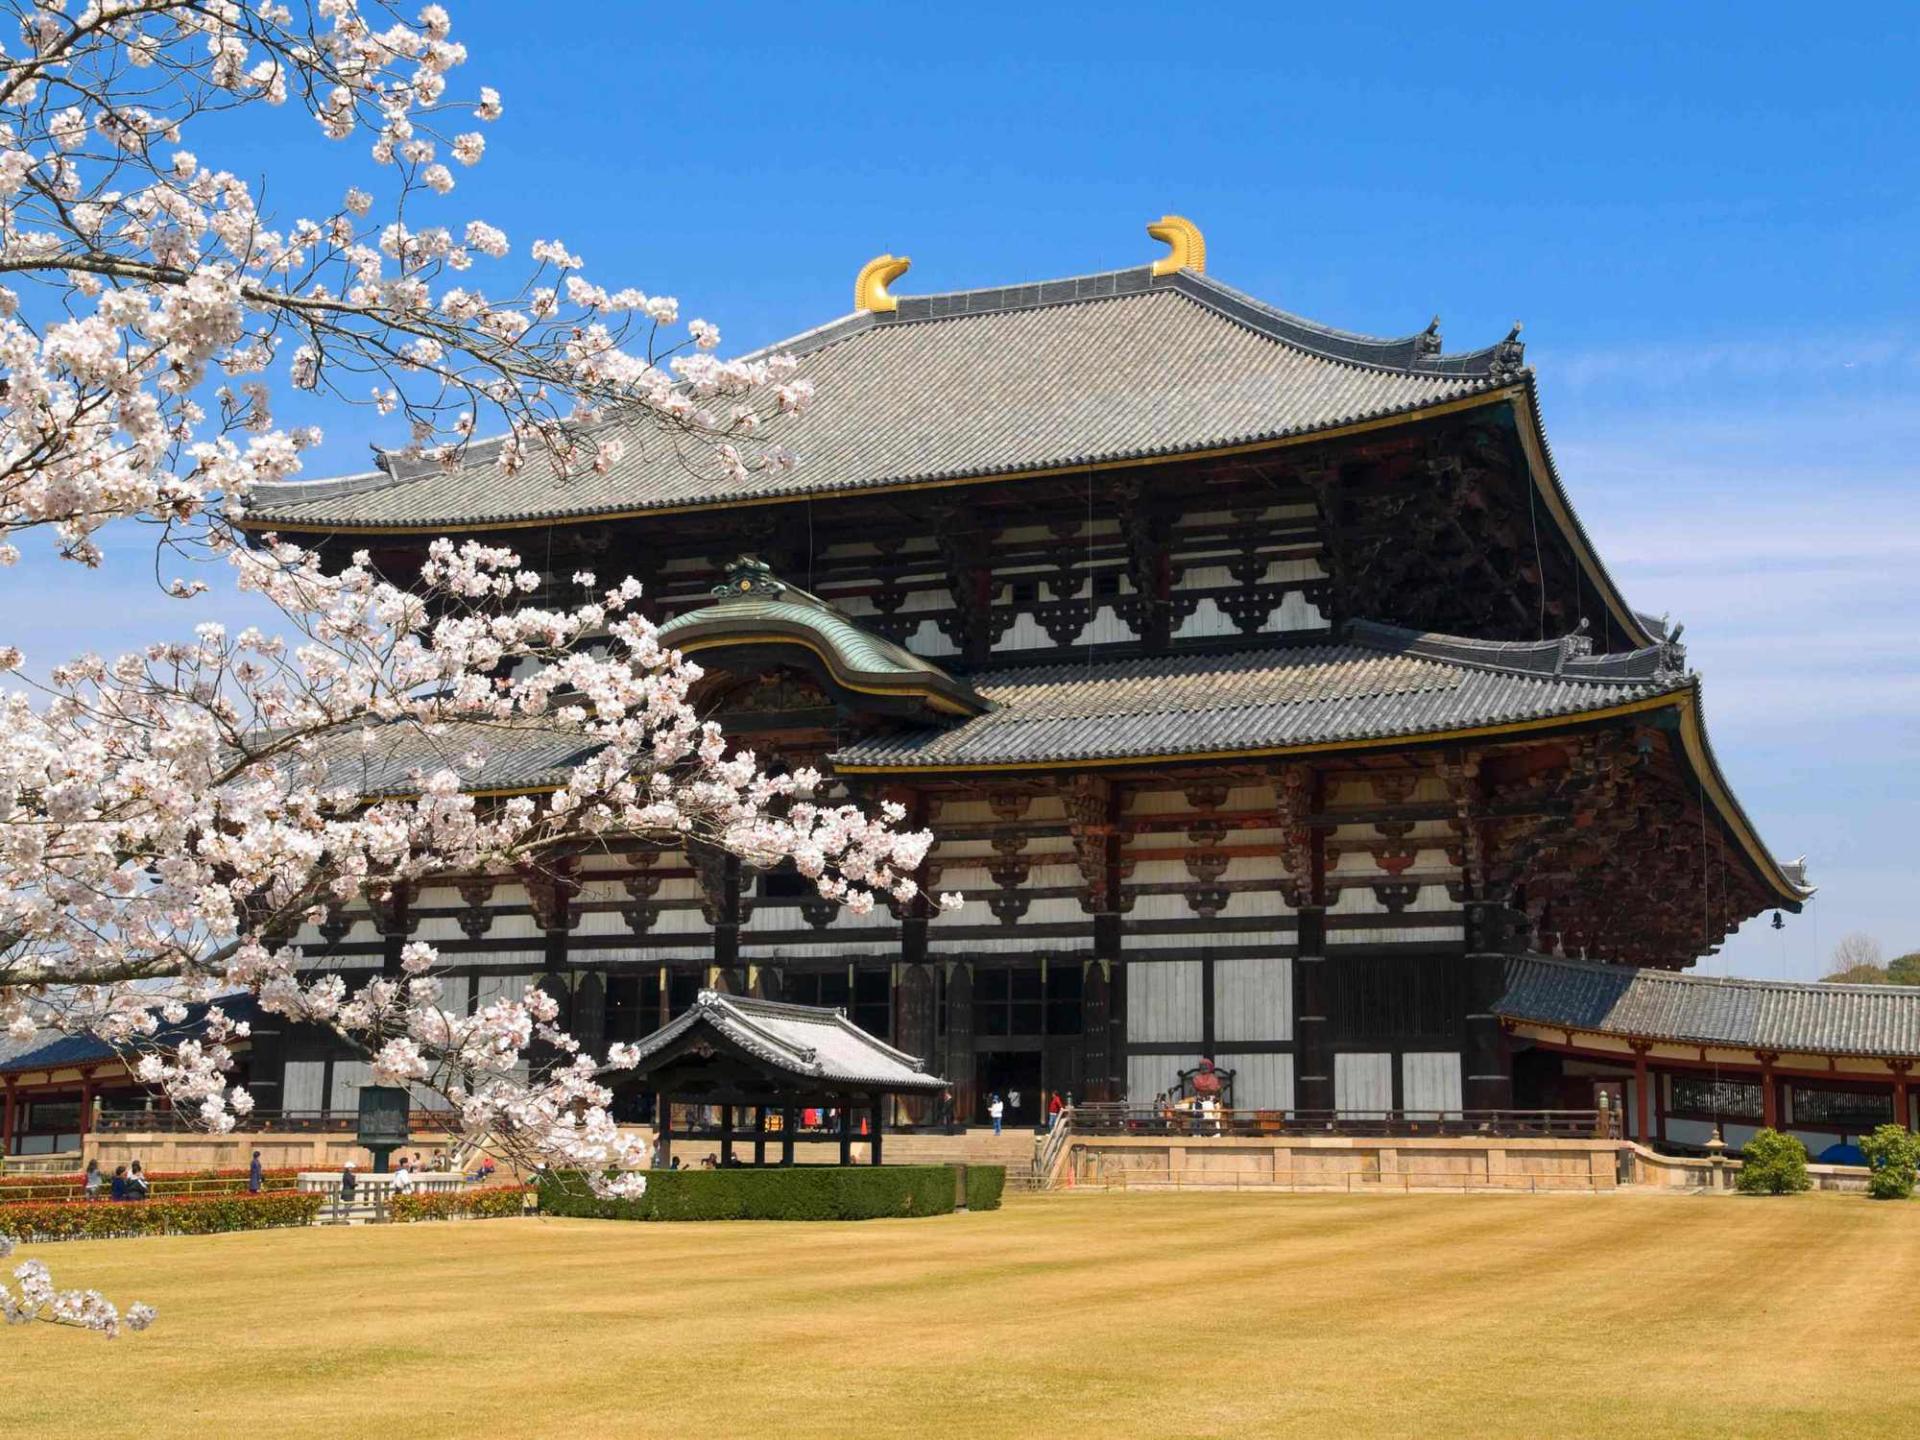 СМИ: Храмы в Японии начали принимать пожертвования через интернет